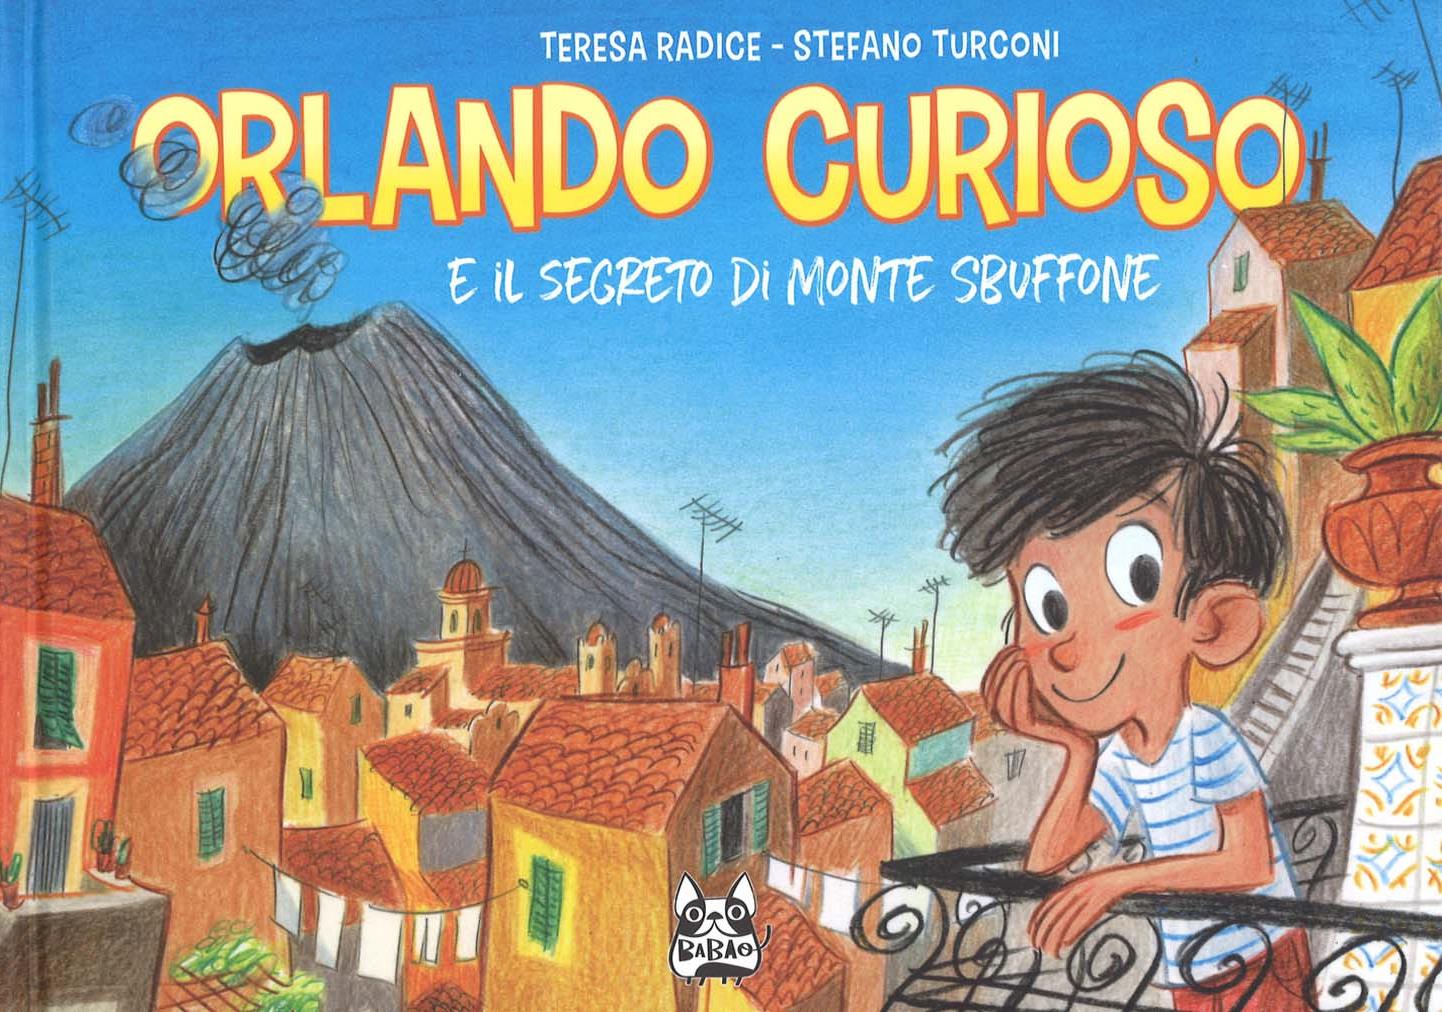 Teresa Radice / Stefano Turconi - Orlando Curioso E Il Segreto Di Monte Sbuffone